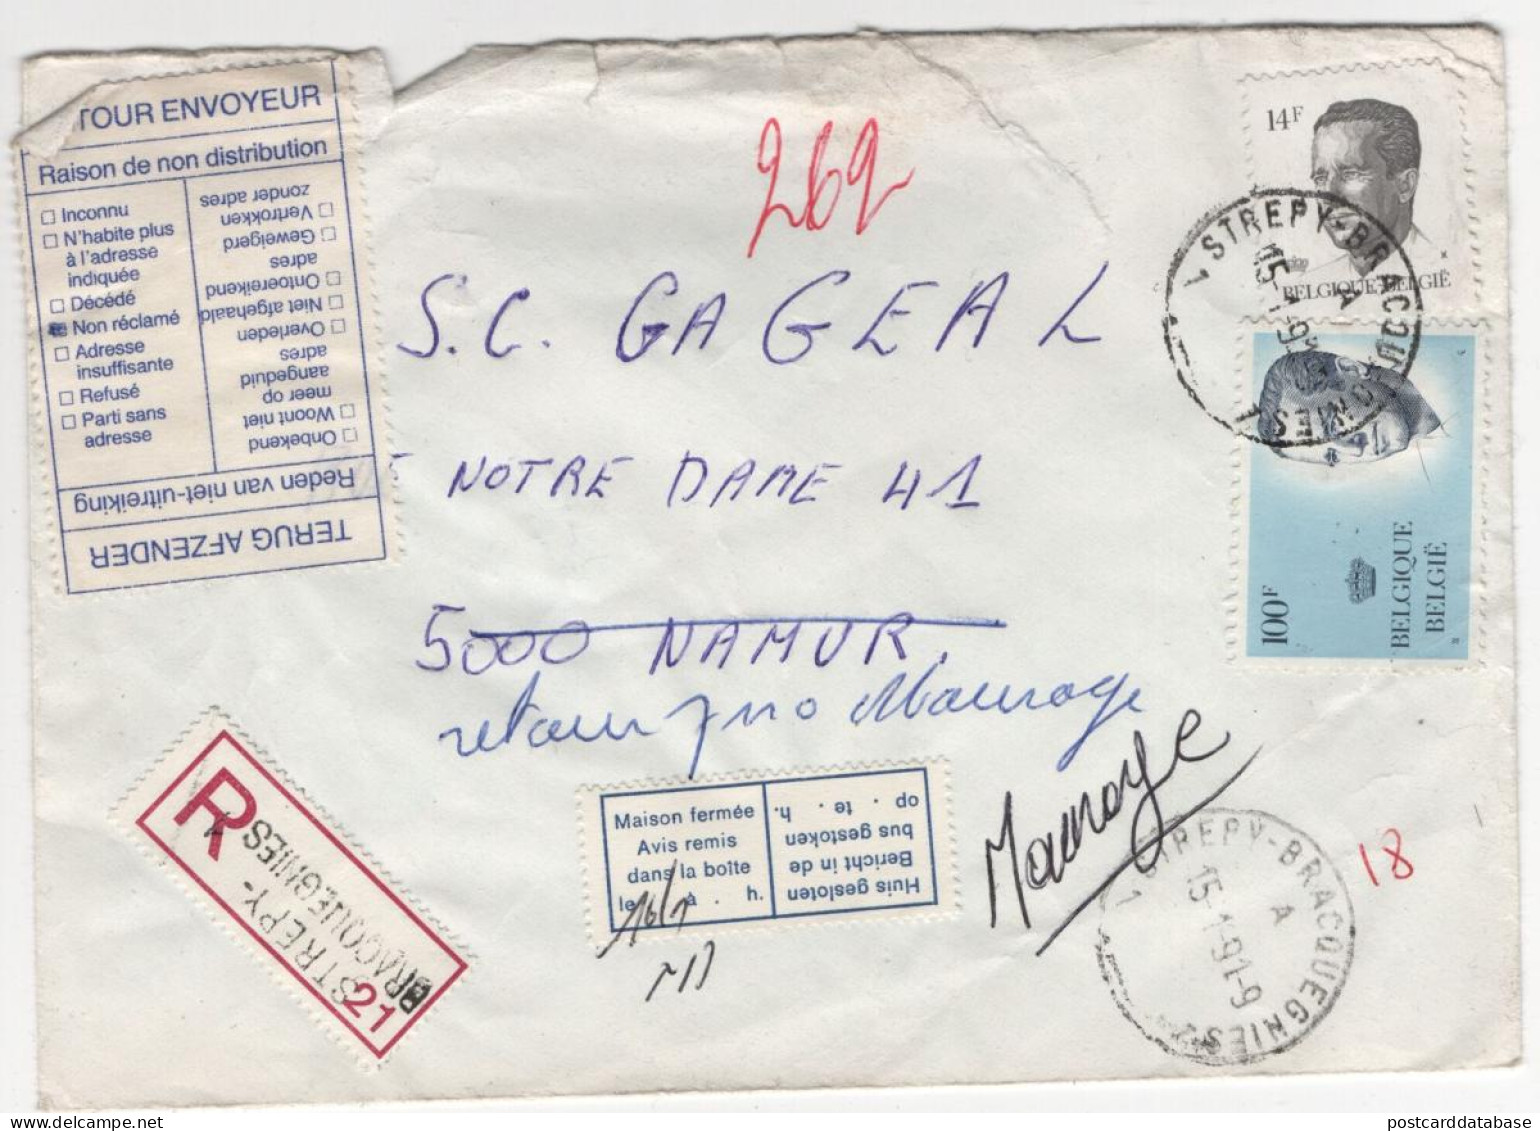 Envelope - Belgium - Registered Strepy Bracquegnies 1991 - Briefe U. Dokumente